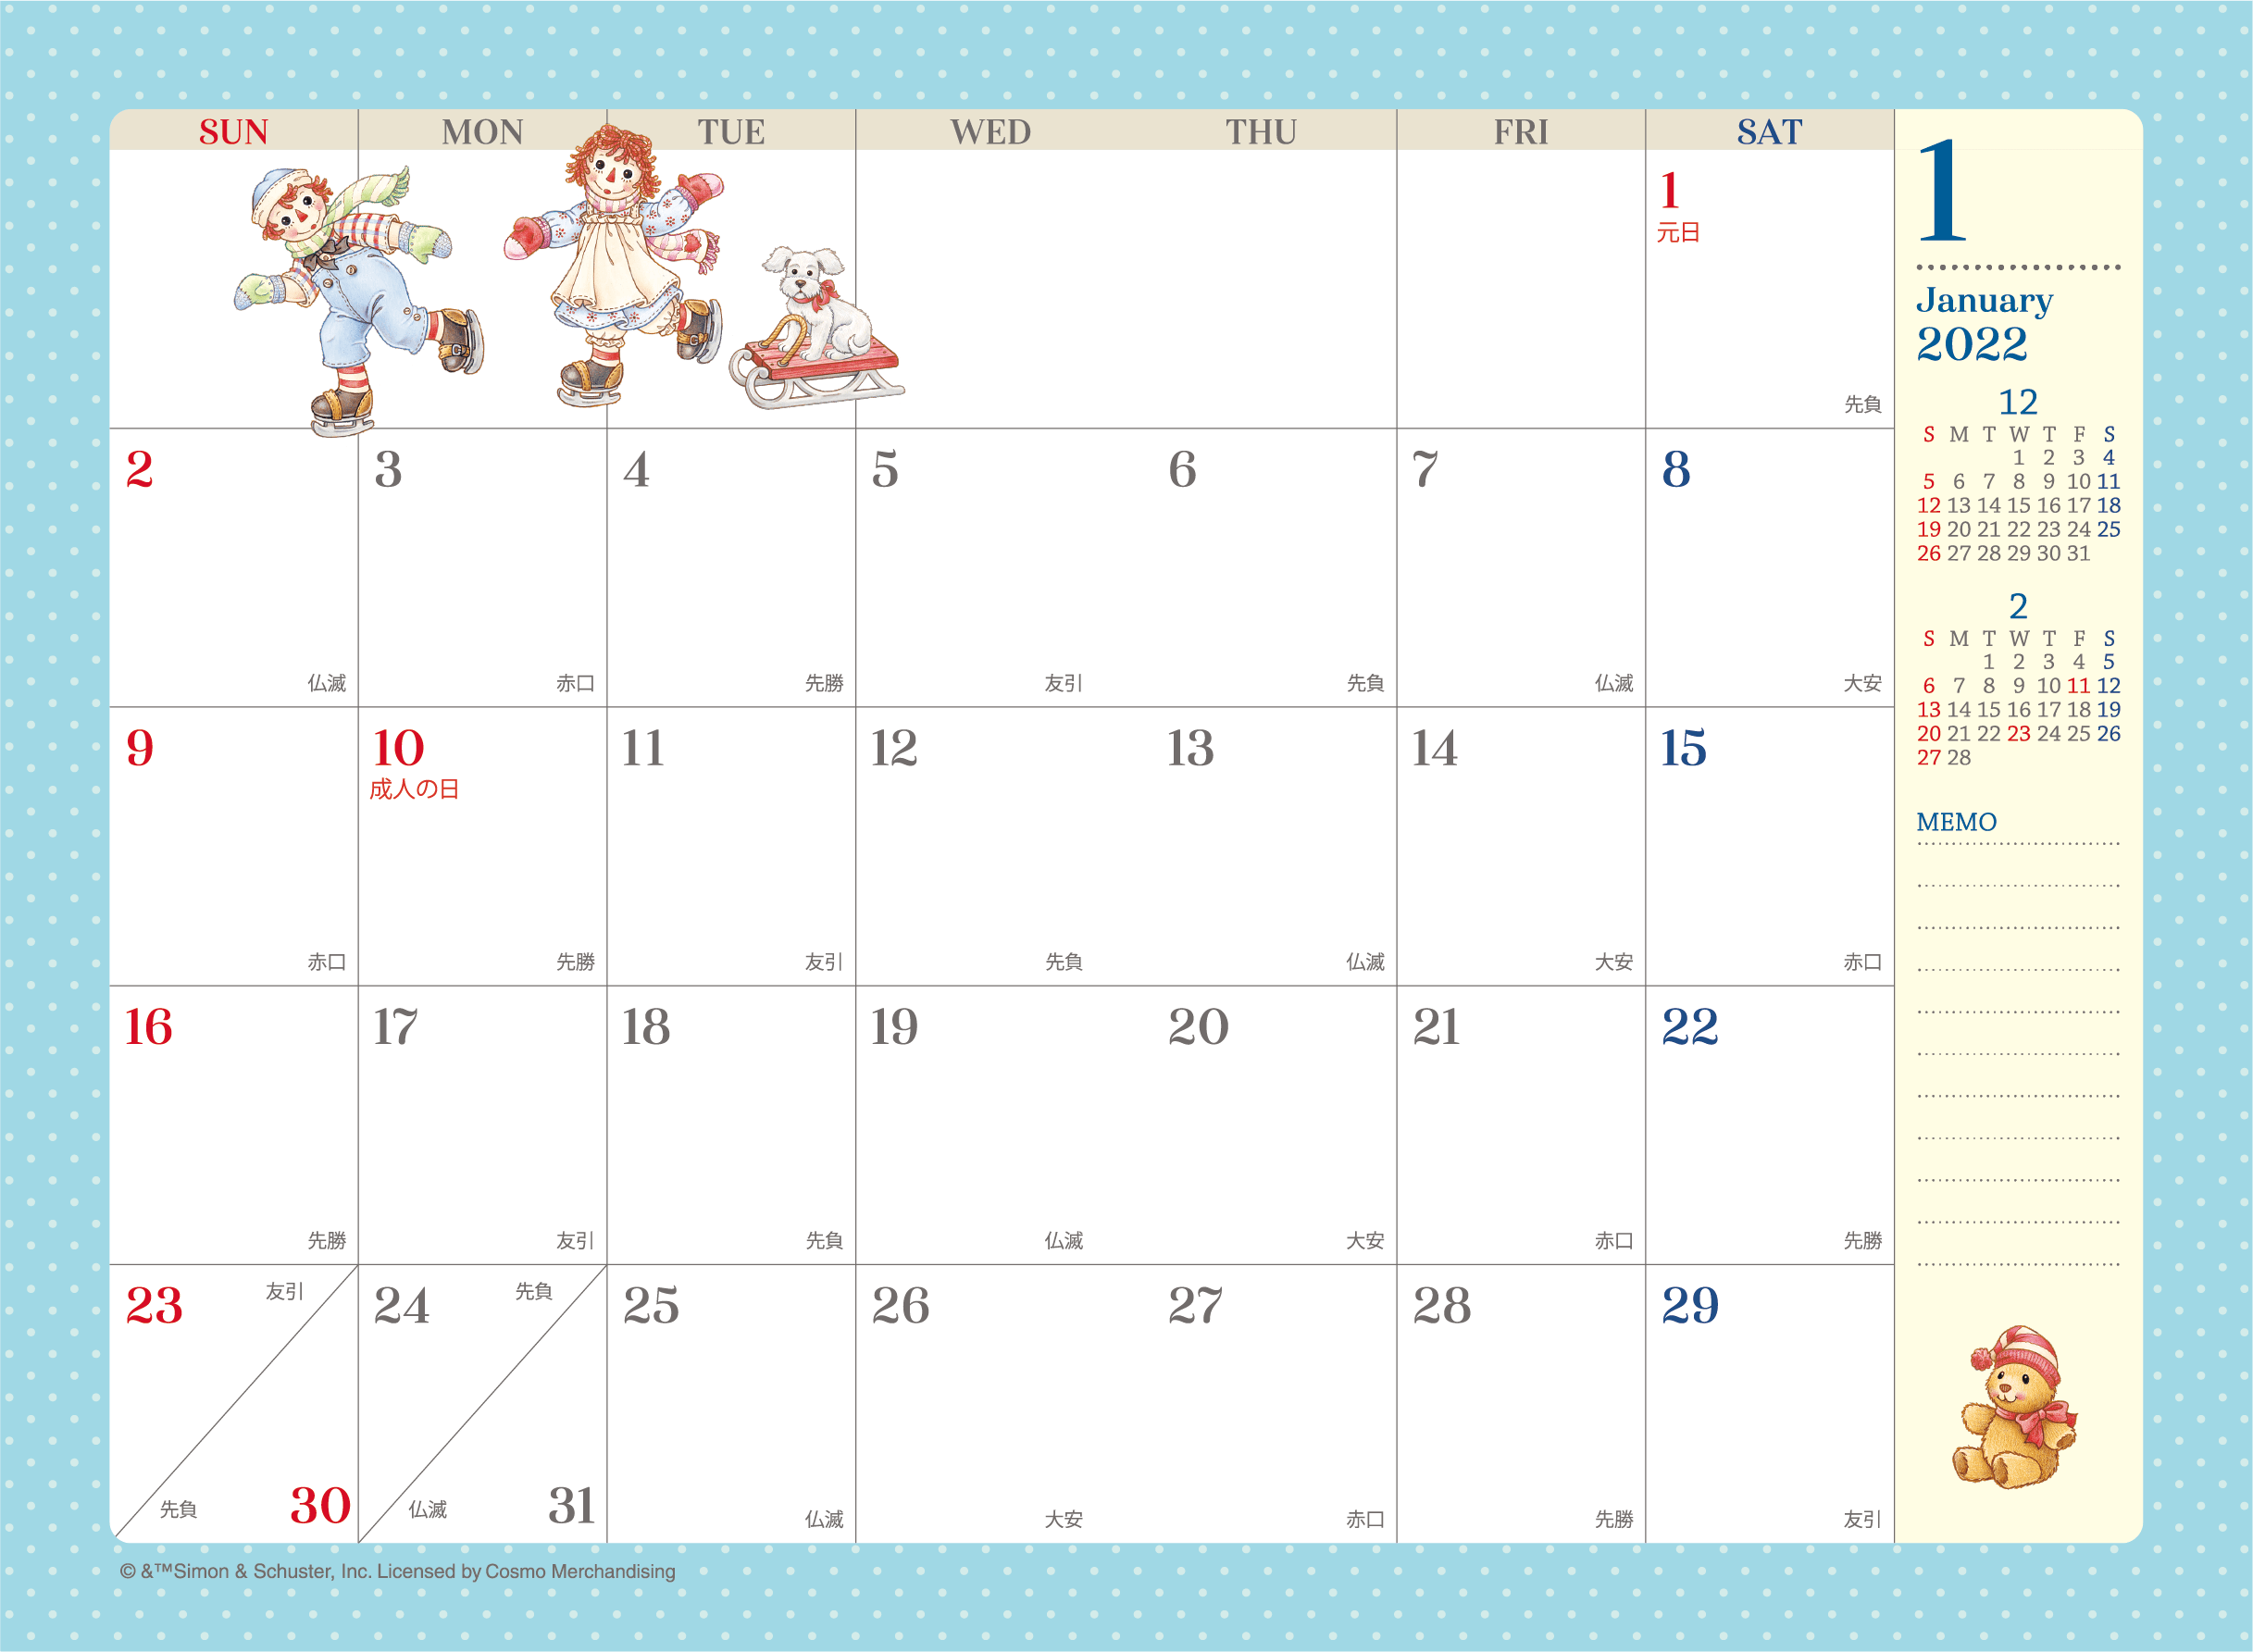 ラガディ・アン＆アンディ カレンダー商品2022画像提供のご案内 | 株式会社ジオジャパン